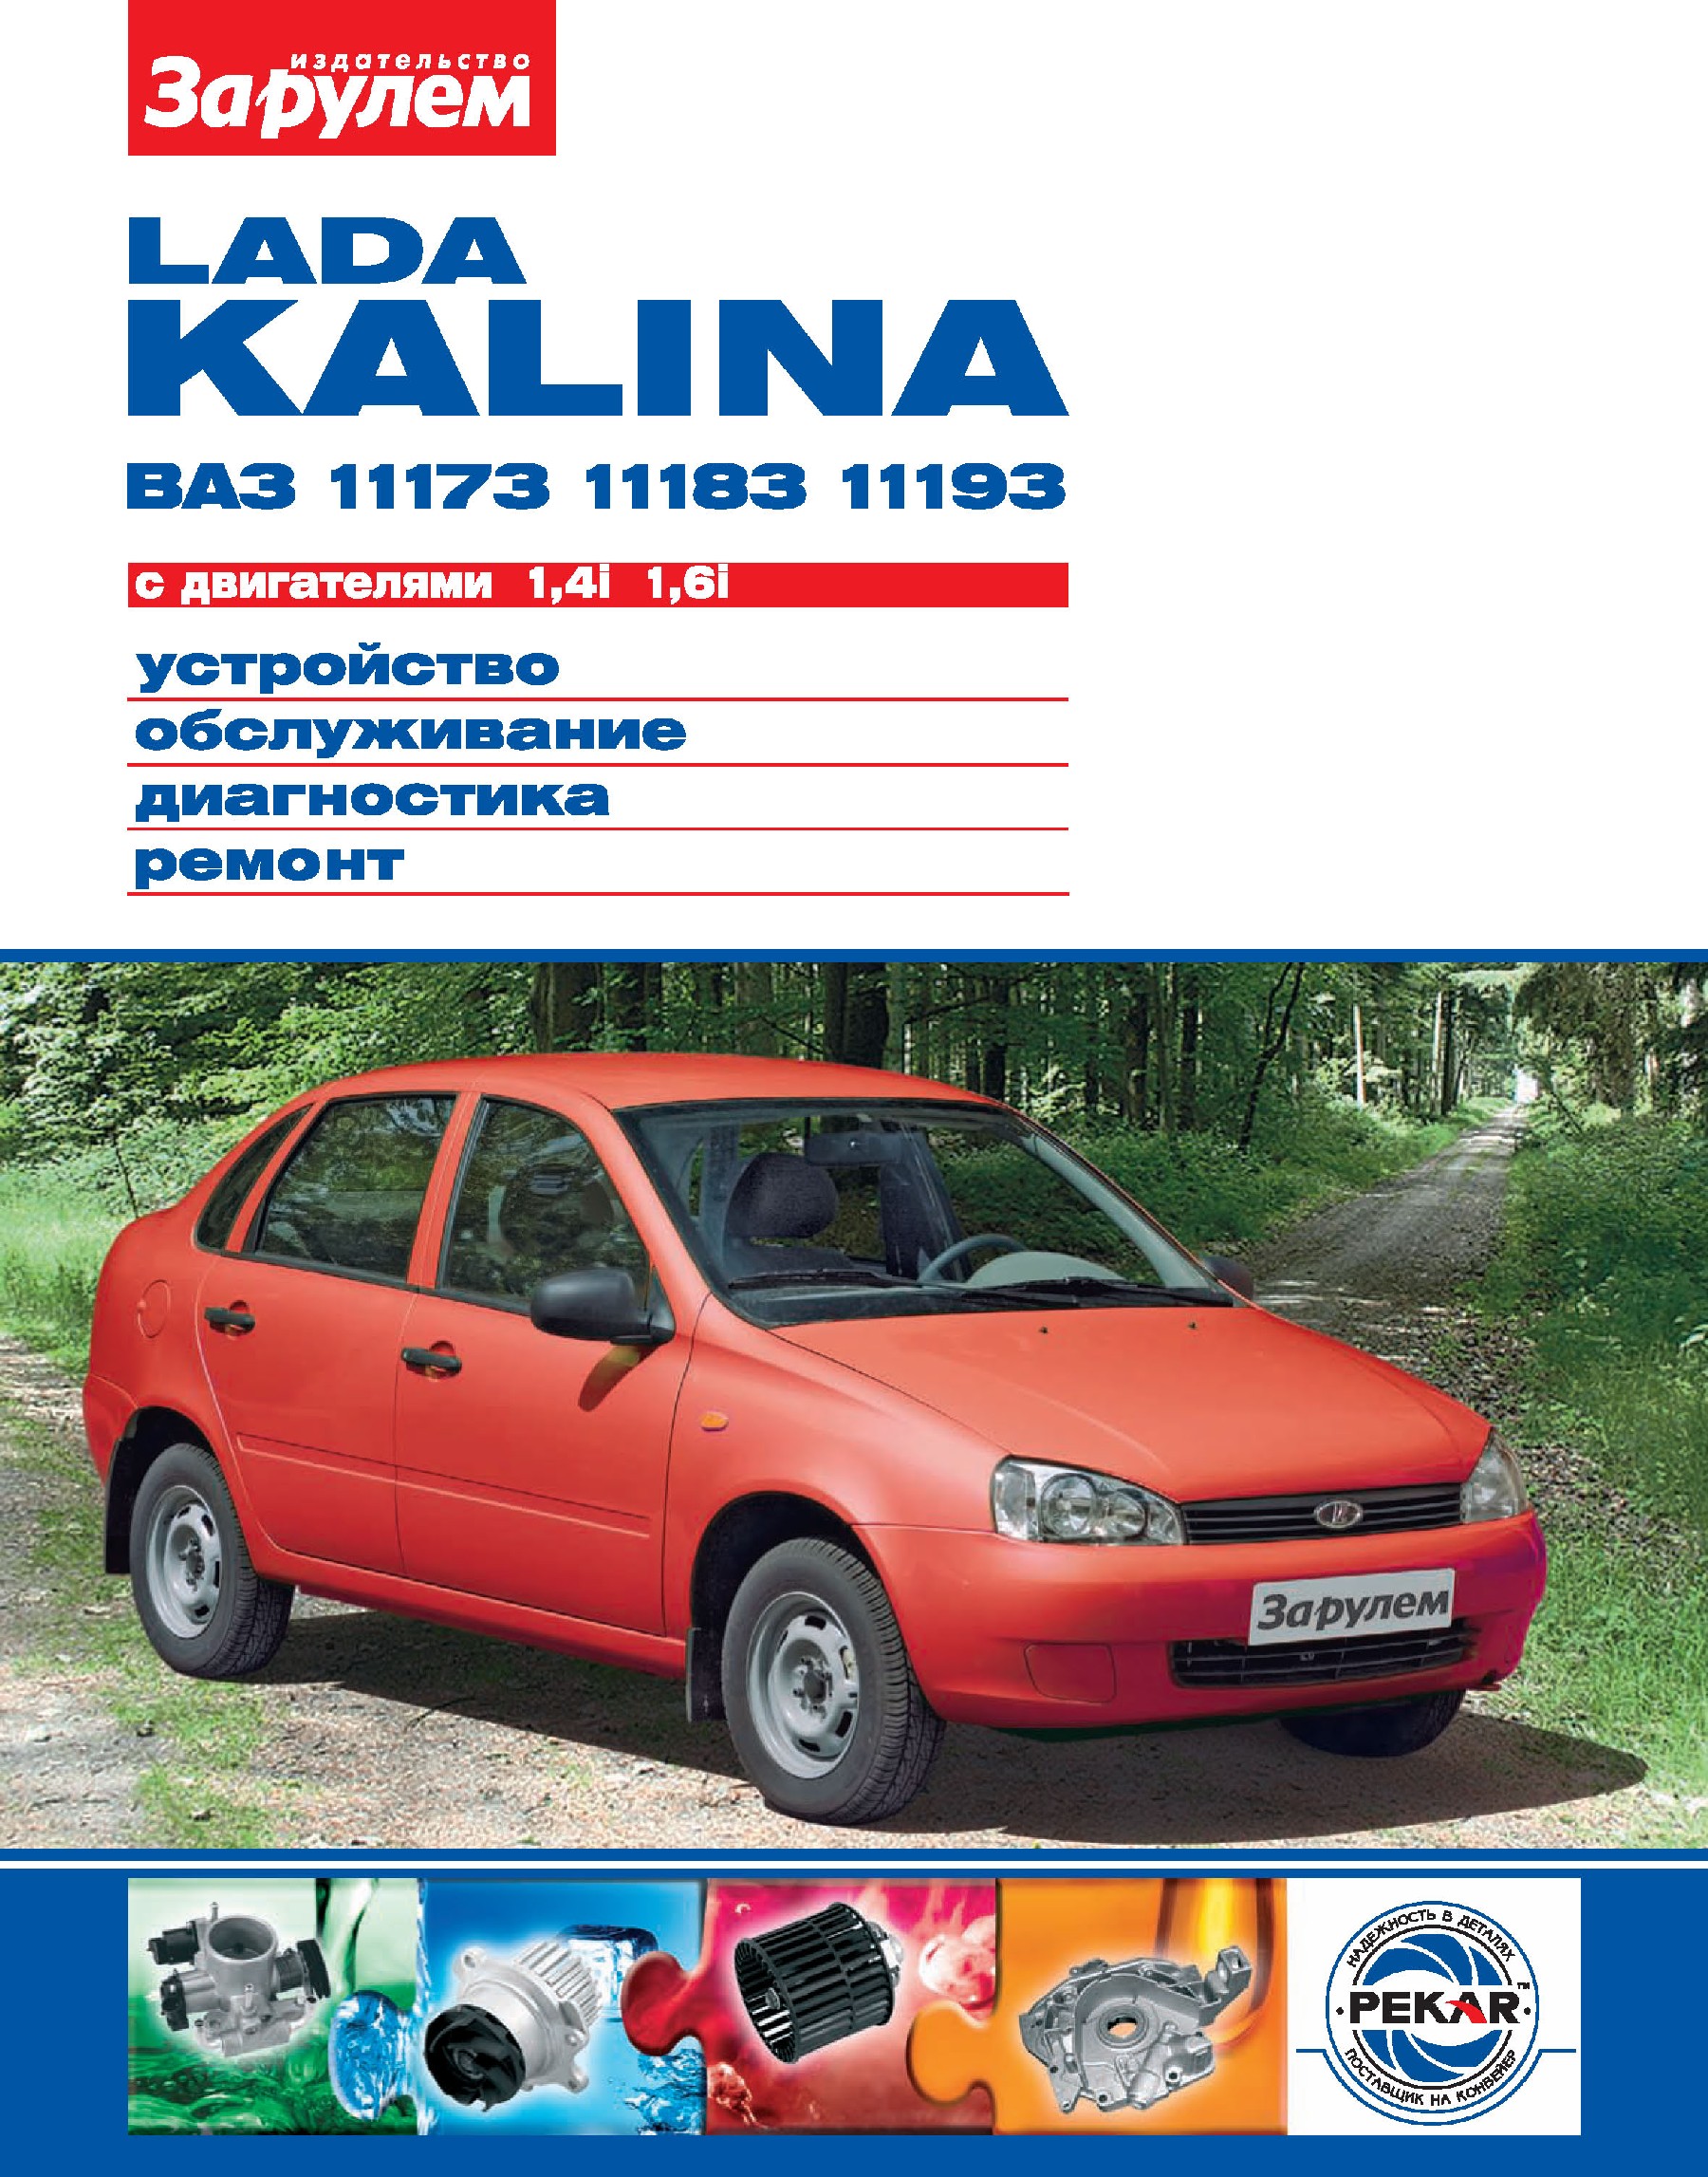 Lada KalinaВАЗ-11173, -11183, -11193 с двигателями 1,4i; 1,6i. Устройство, обслуживание, диагностика, ремонт. Иллюстрированное руководство